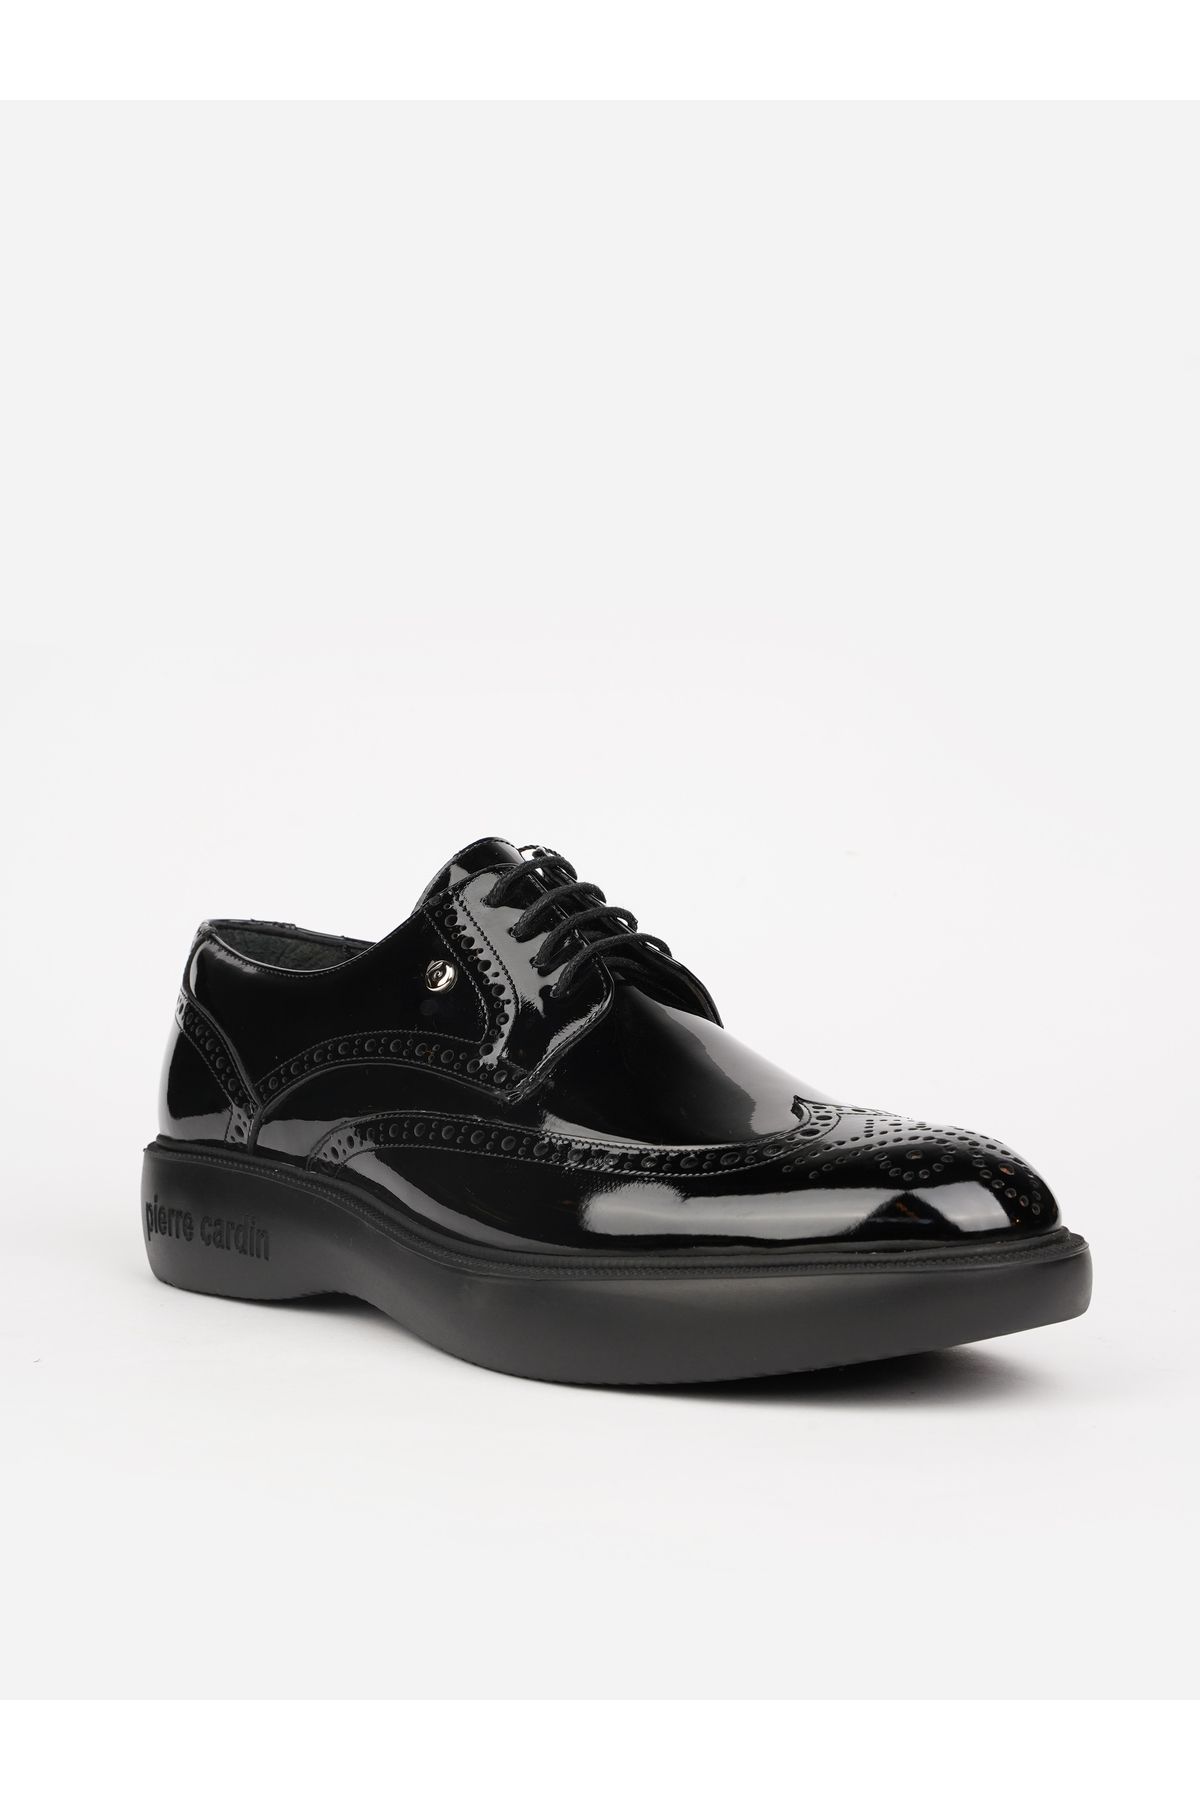 Pierre Cardin Siyah CONFORT MEDİCAL TABAN HAKIKI DERİ encok satan model sneaker.. damat ayakkabısı GALİP BABA